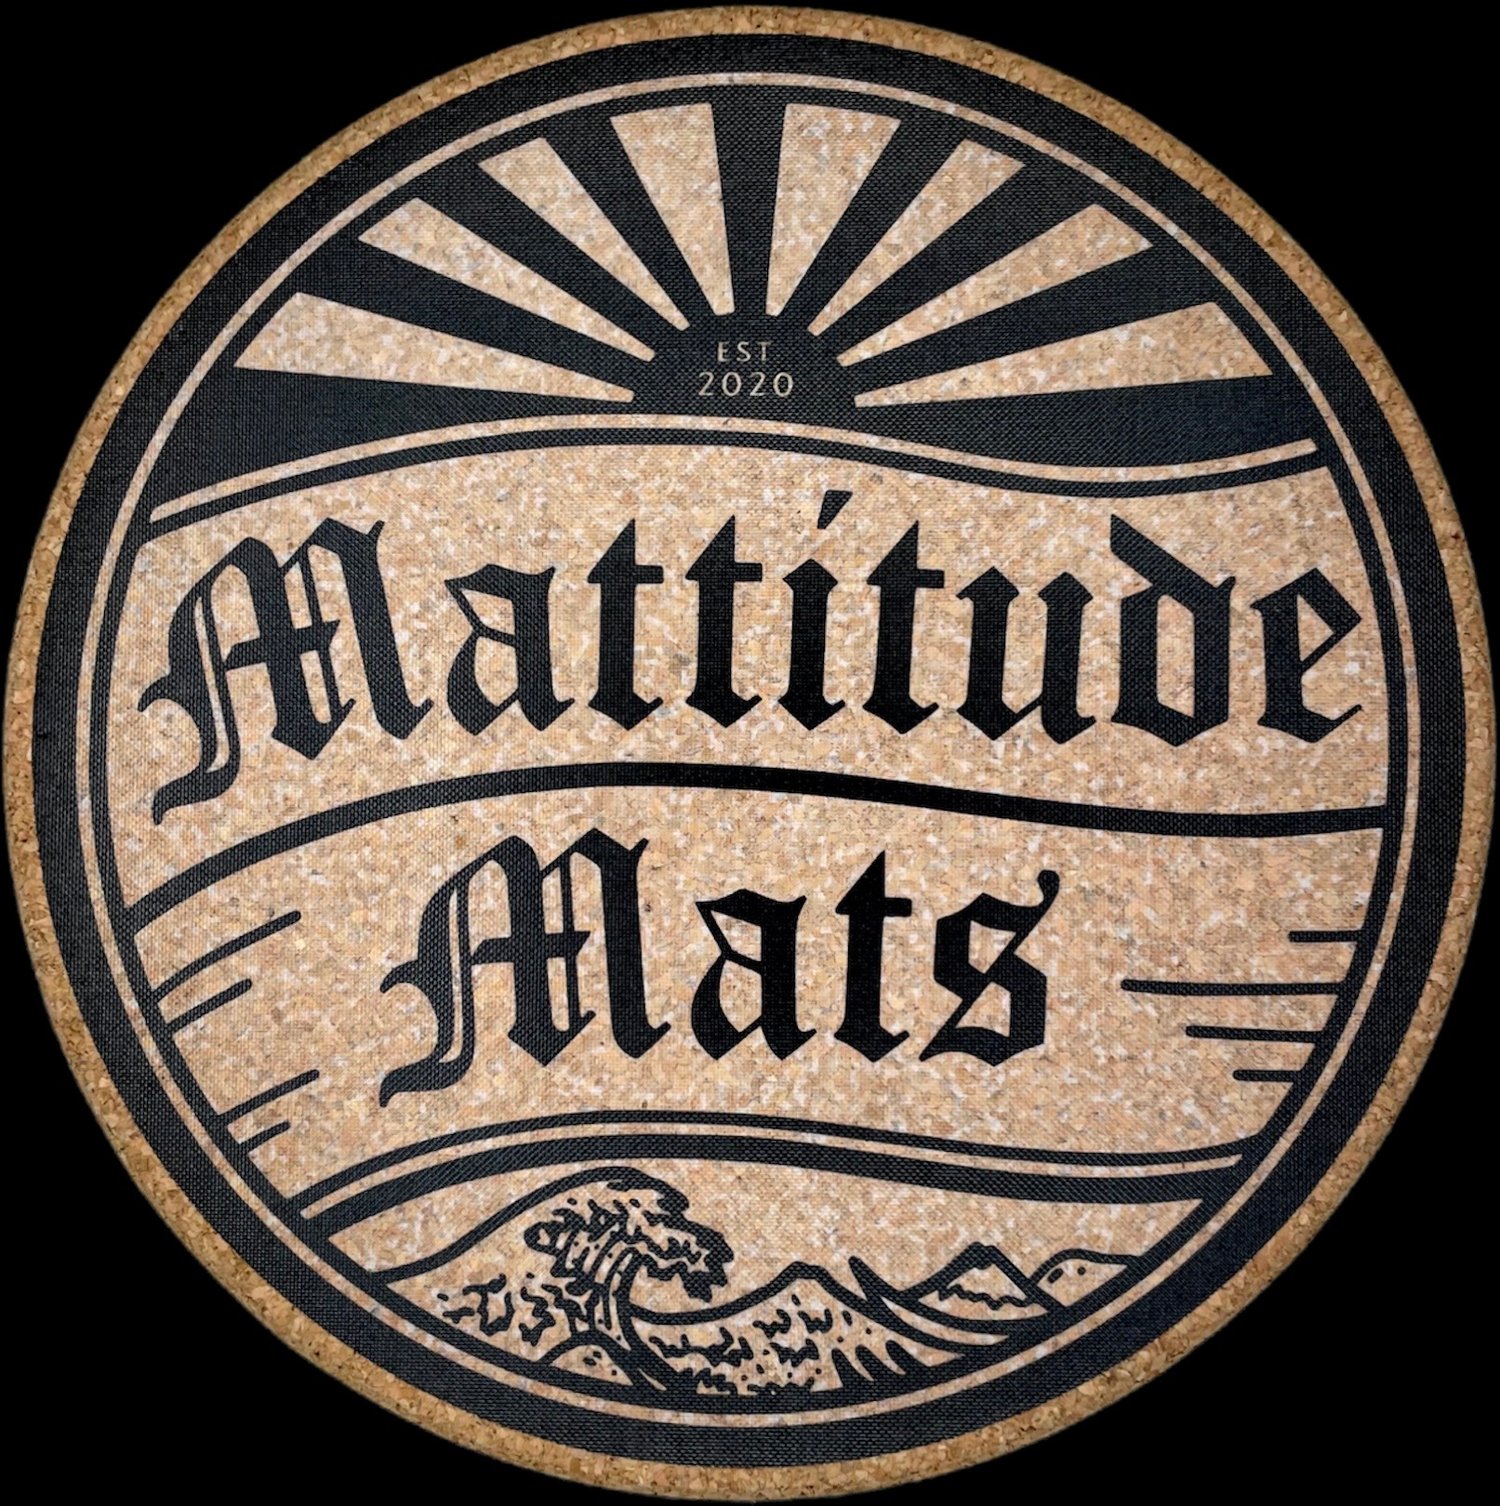 Mattitudemats Logo Mat (%33 off)